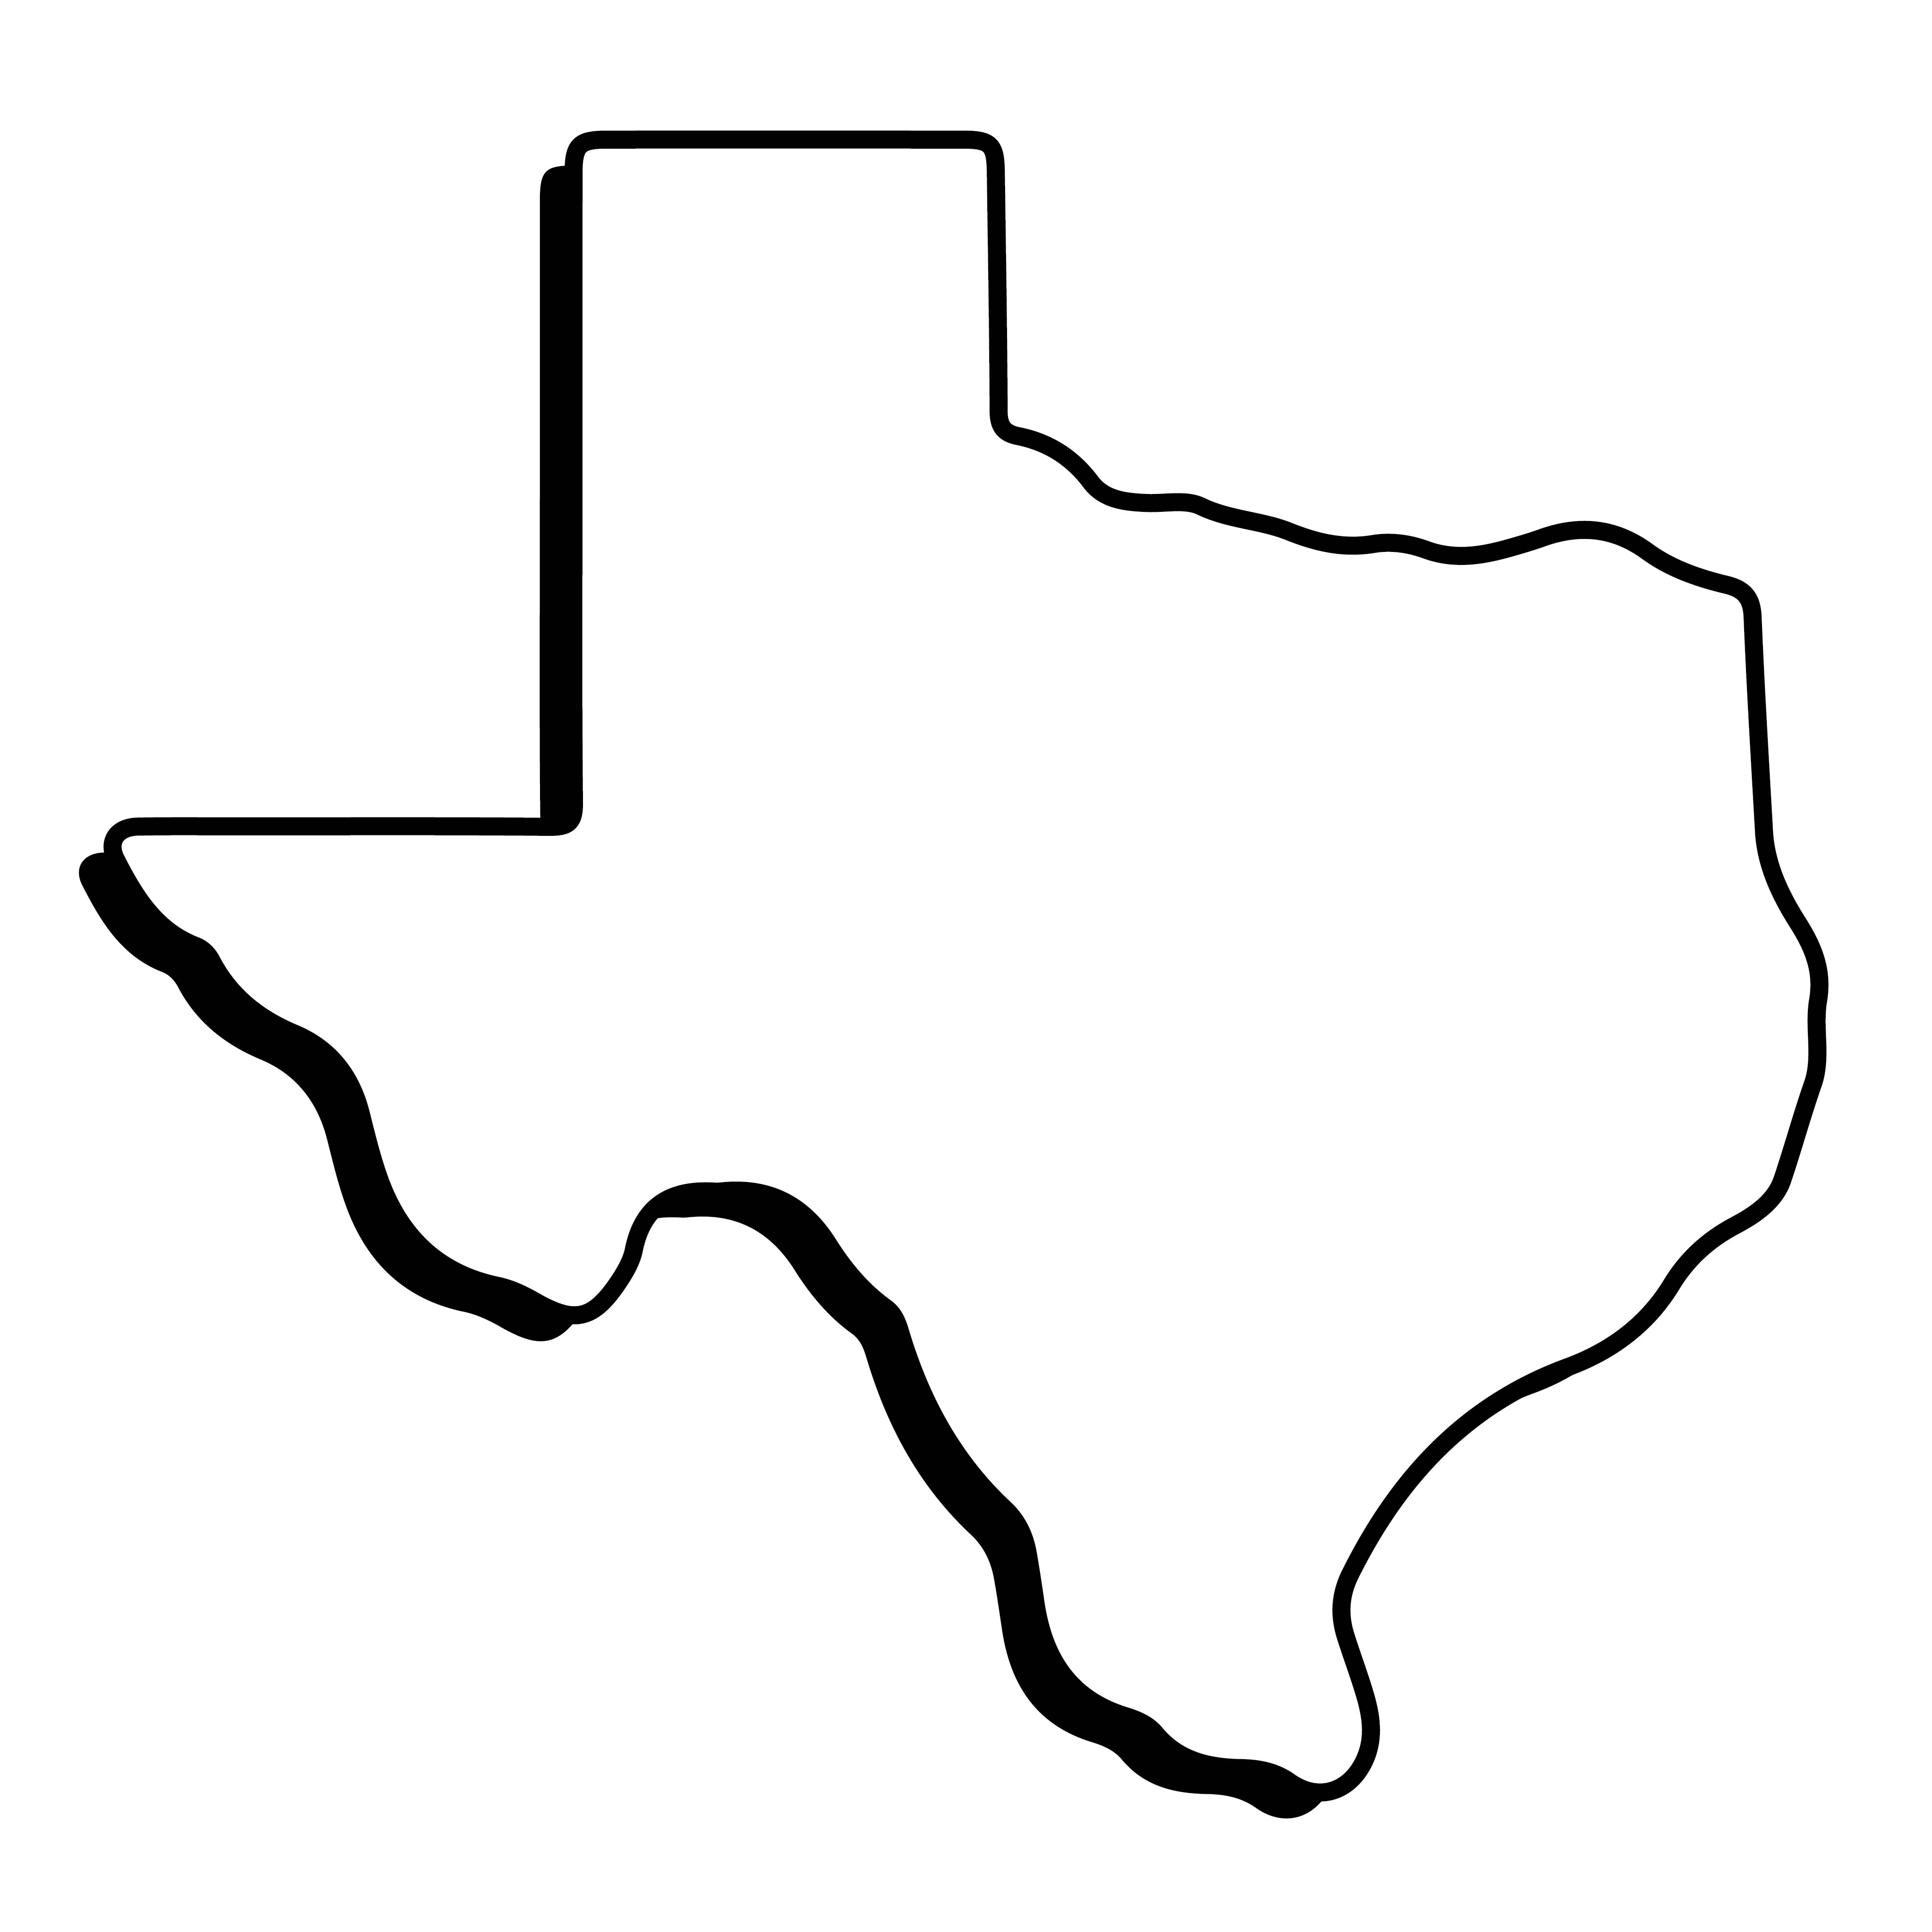 Printable Texas Map Outline